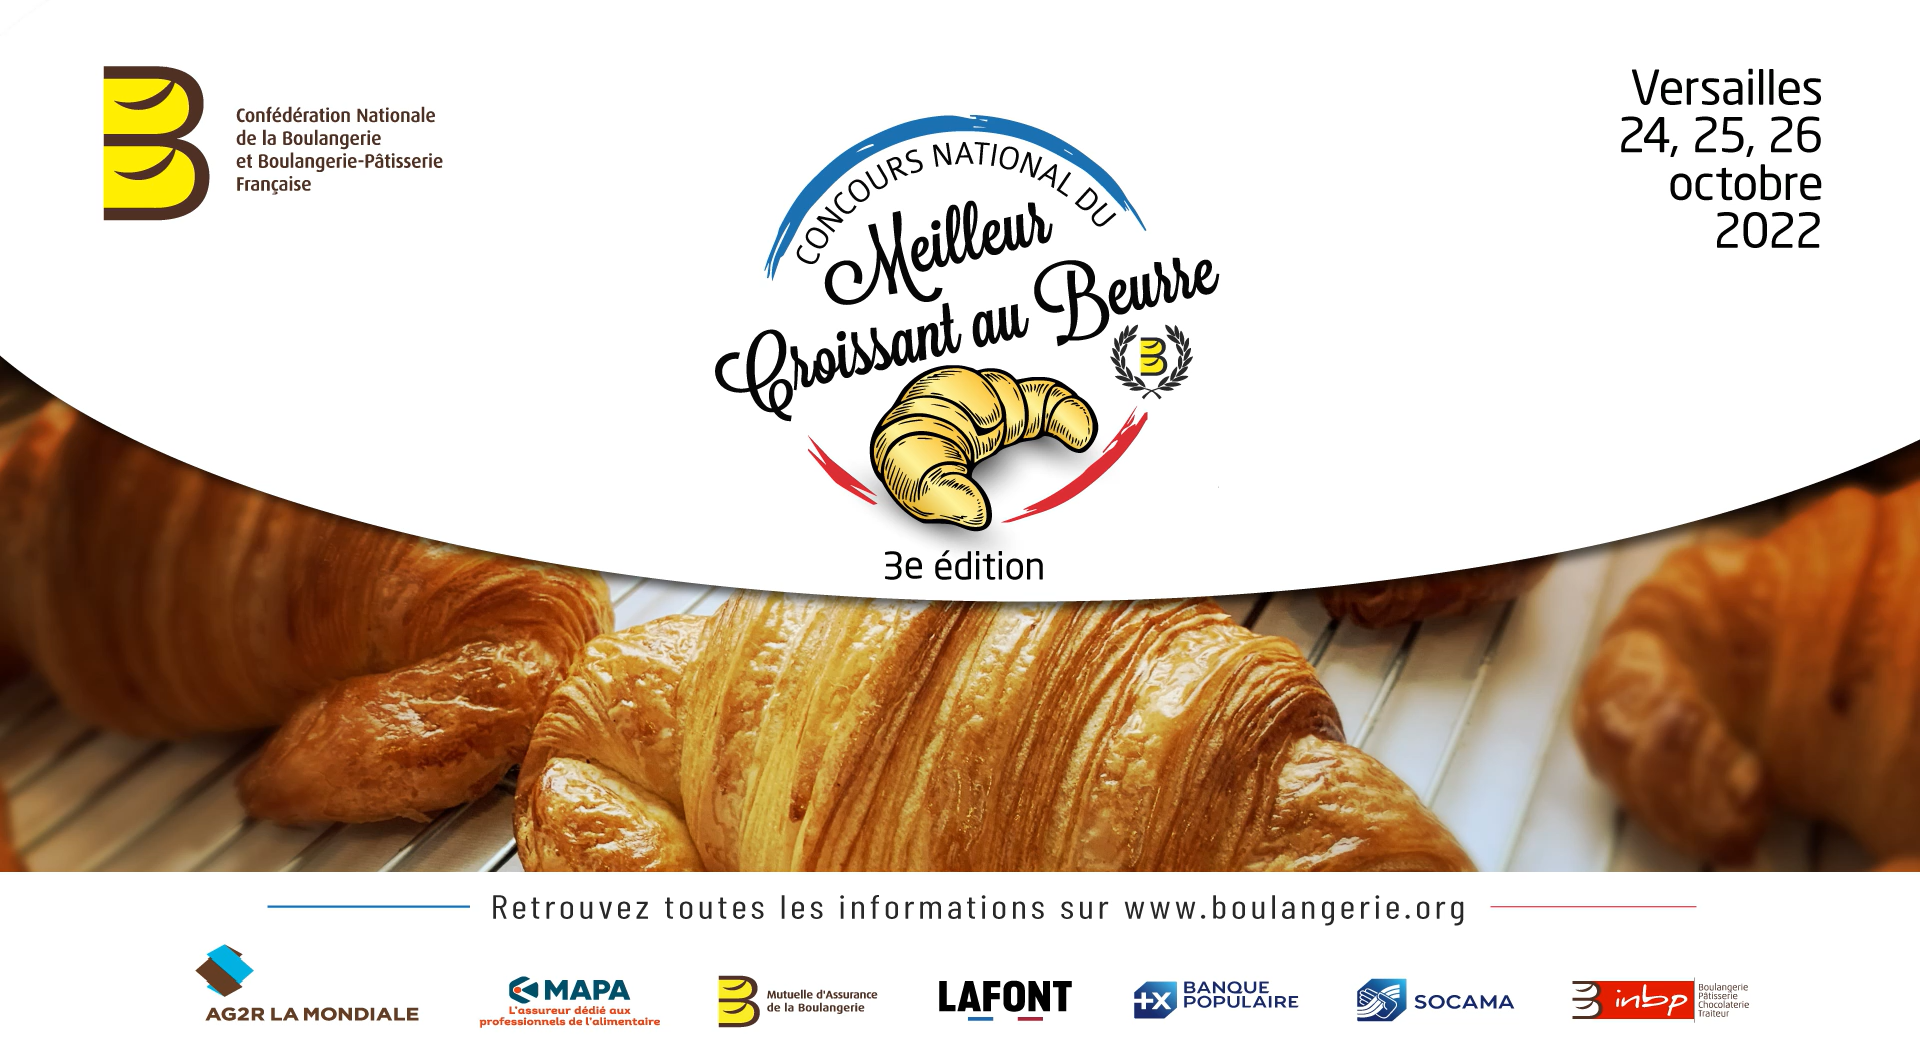 3ème édition du Concours national du Meilleur Croissant au Beurre